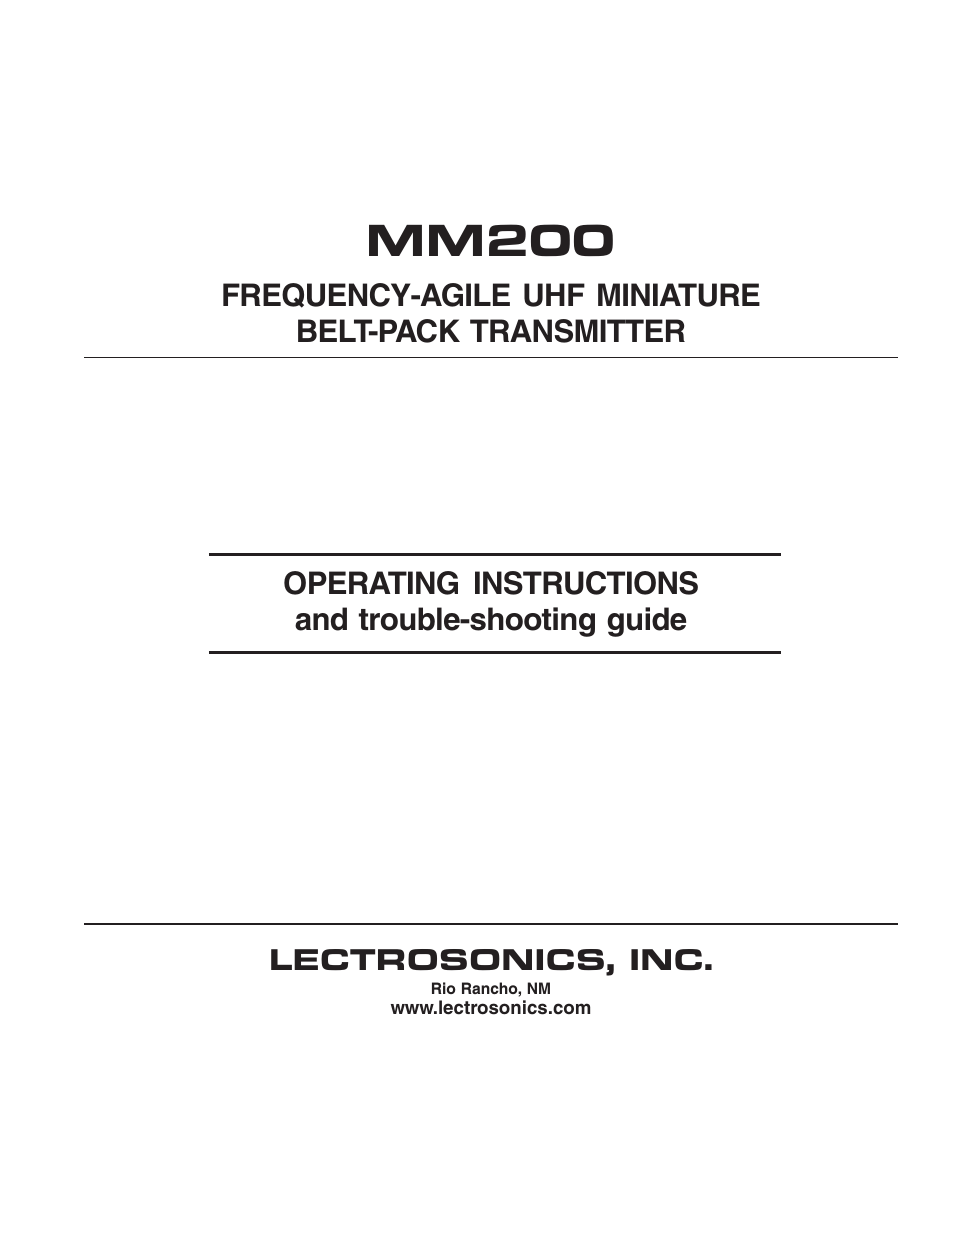 MM200 - Manual